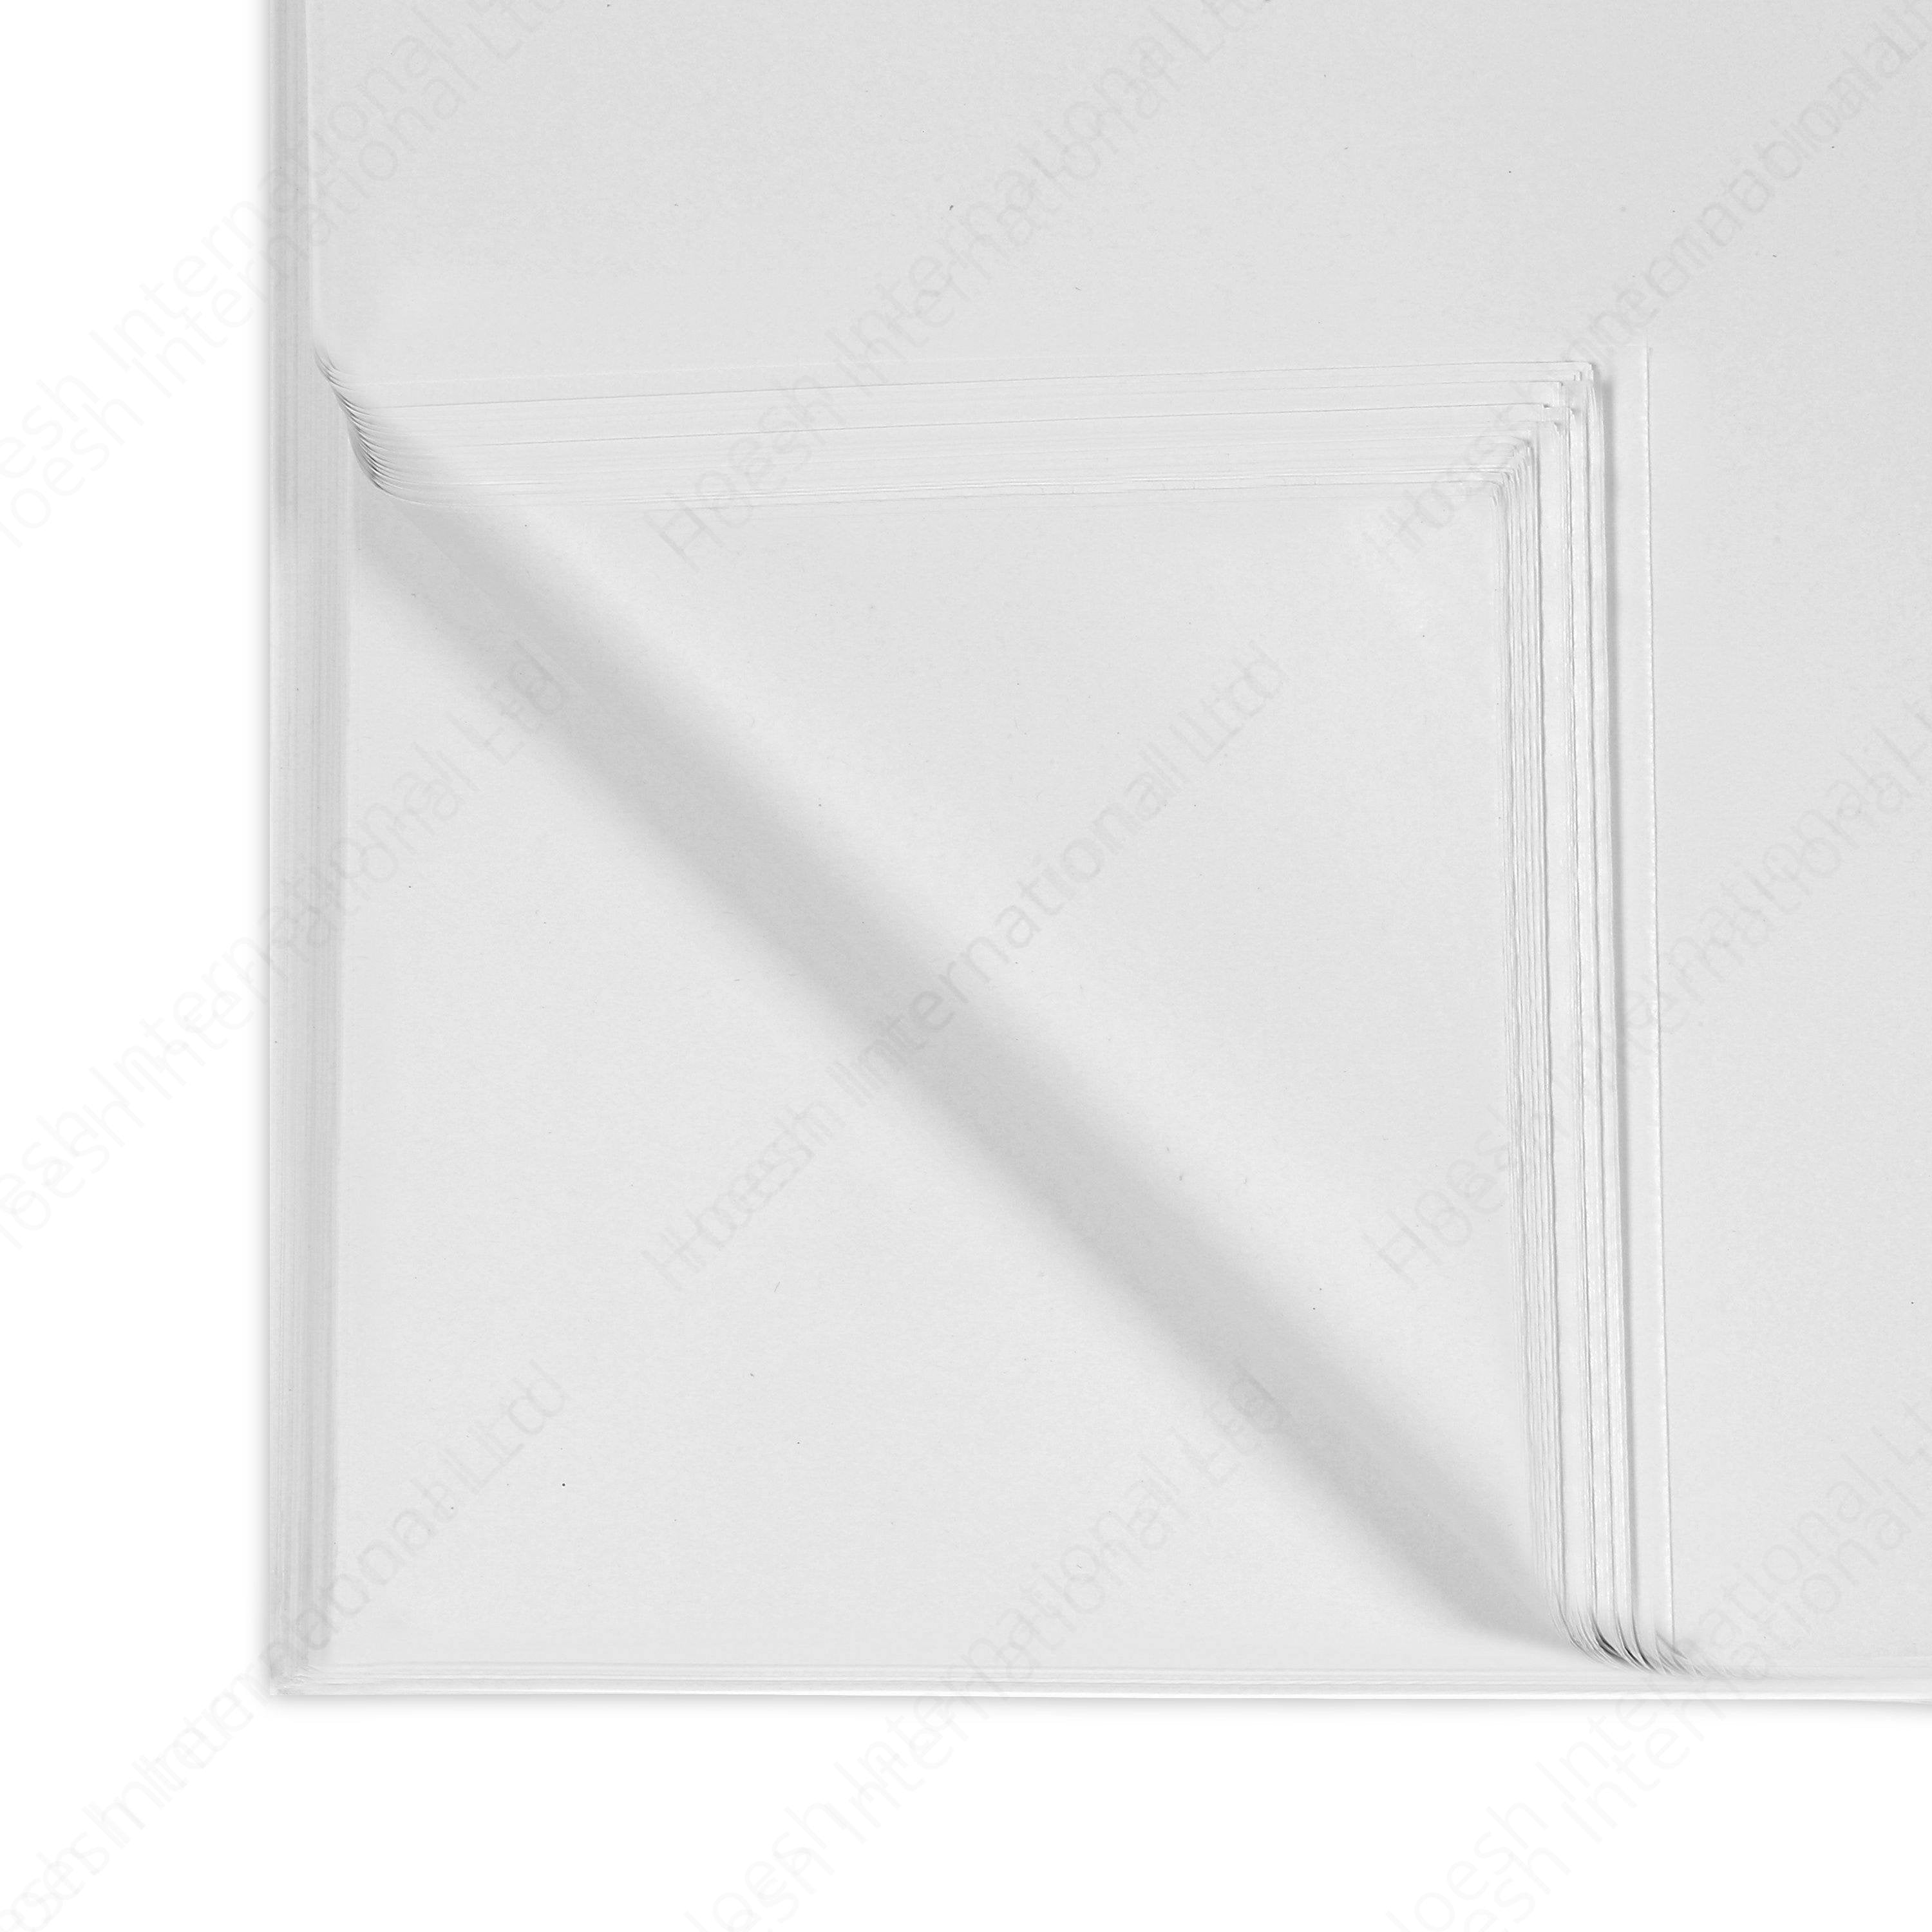 White Acid Free Tissue Paper - Hoesh International Ltd